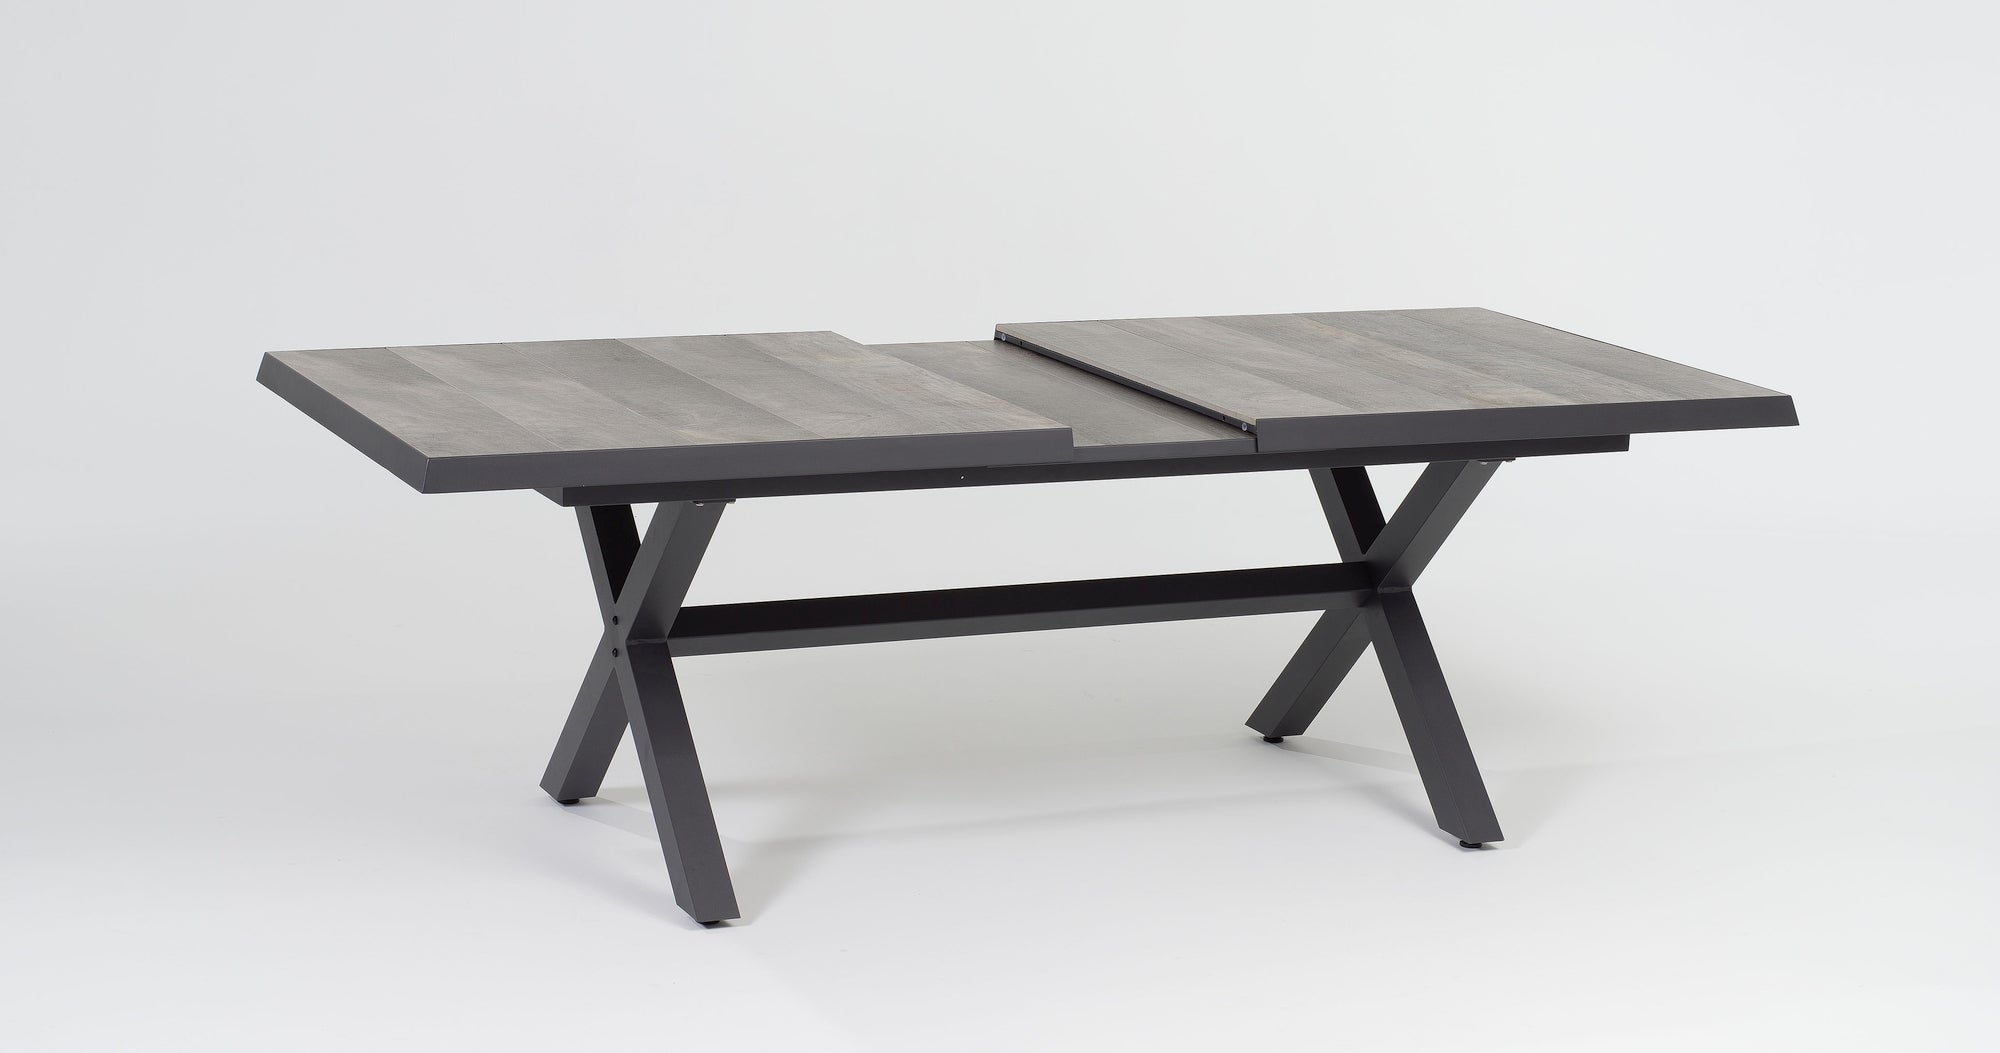 Verstellbare Tischgruppe Kenny von Gartenmöbelshop.at mit mixed grau-braunem Kunststoffgeflecht und erweiterbarem Tisch mit Keramikplatte in Schieferholz-Optik.